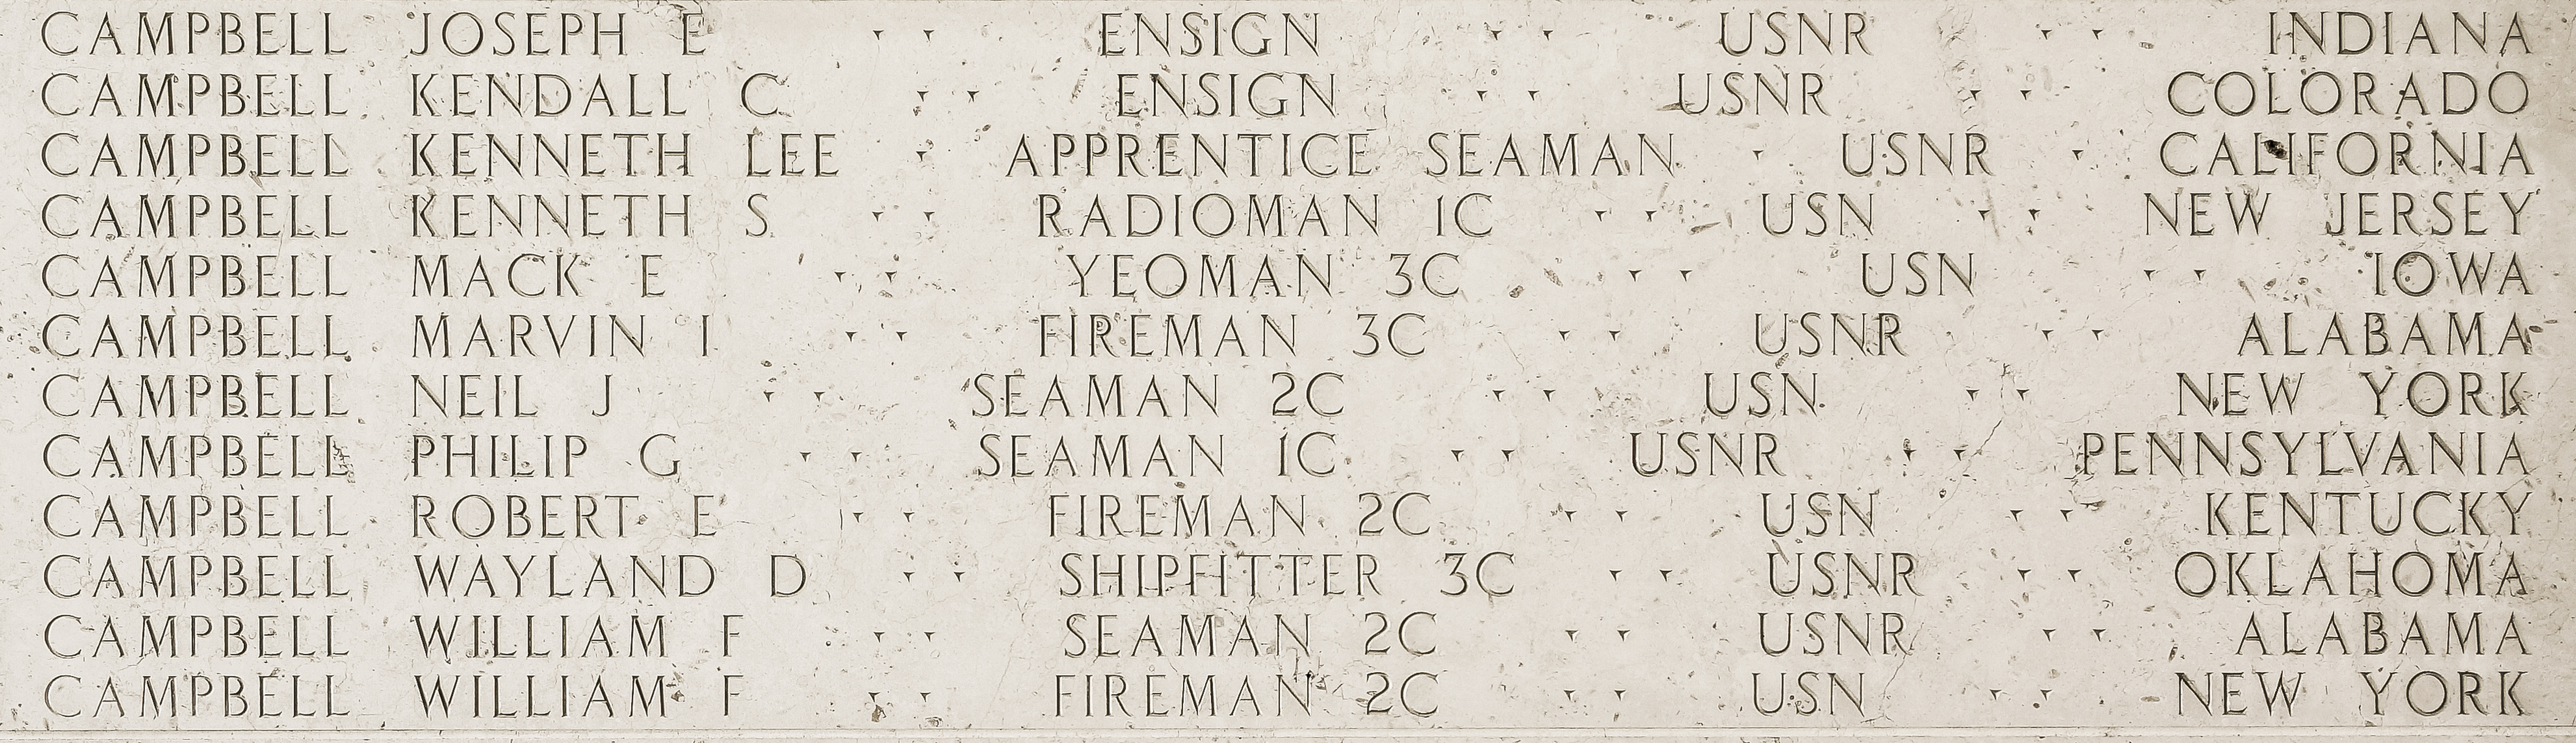 Philip G. Campbell, Seaman First Class